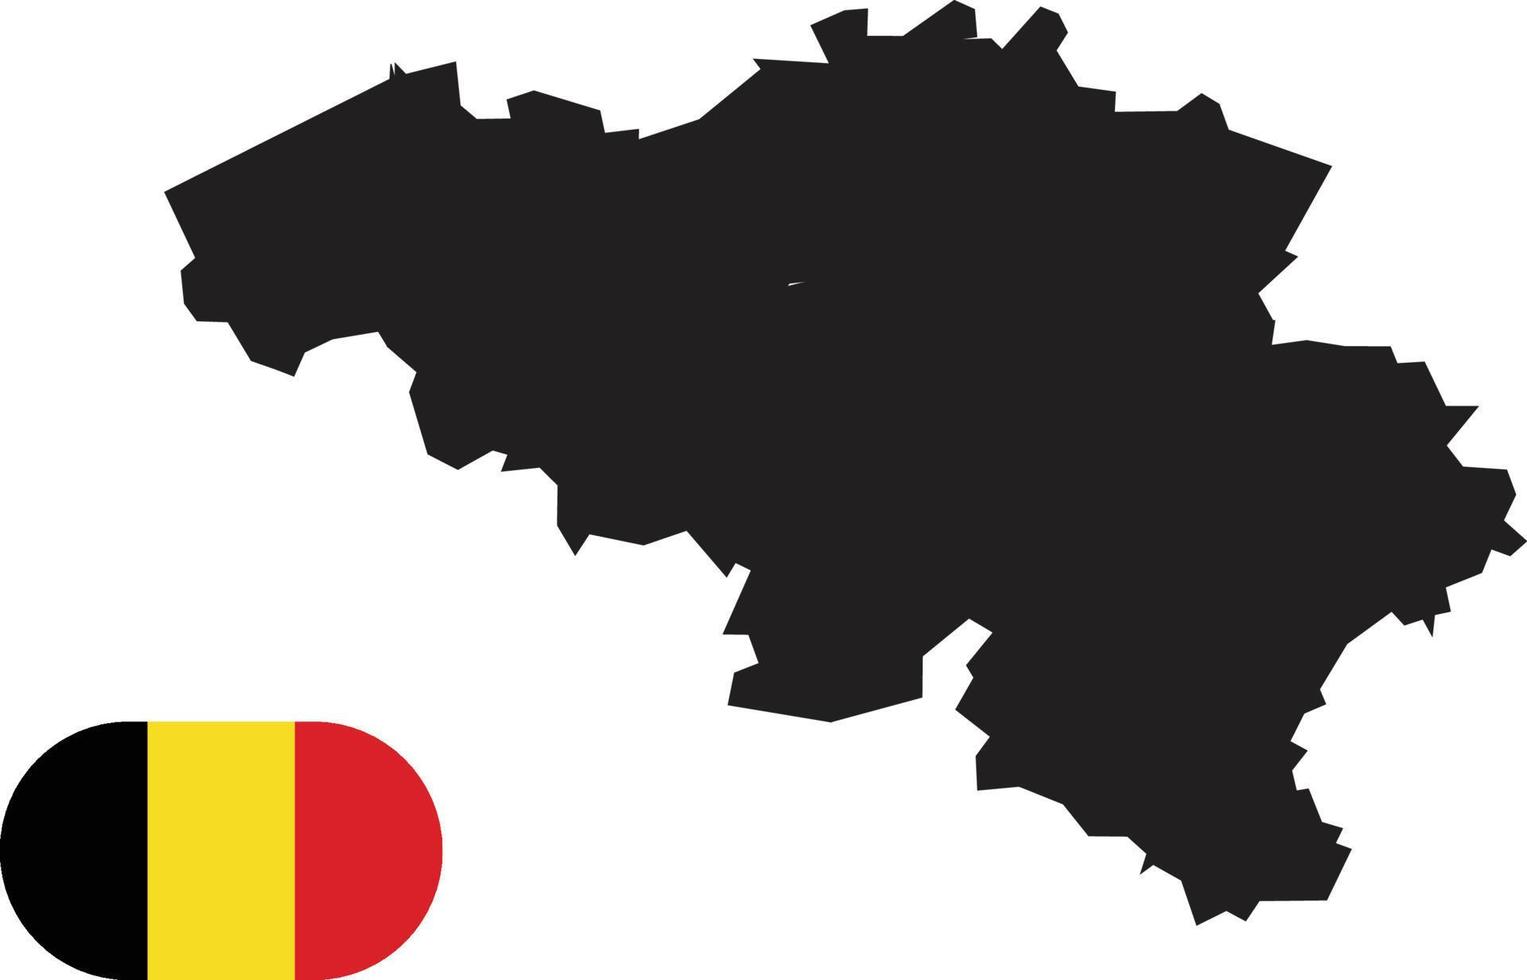 Karte und Flagge von Belgien vektor